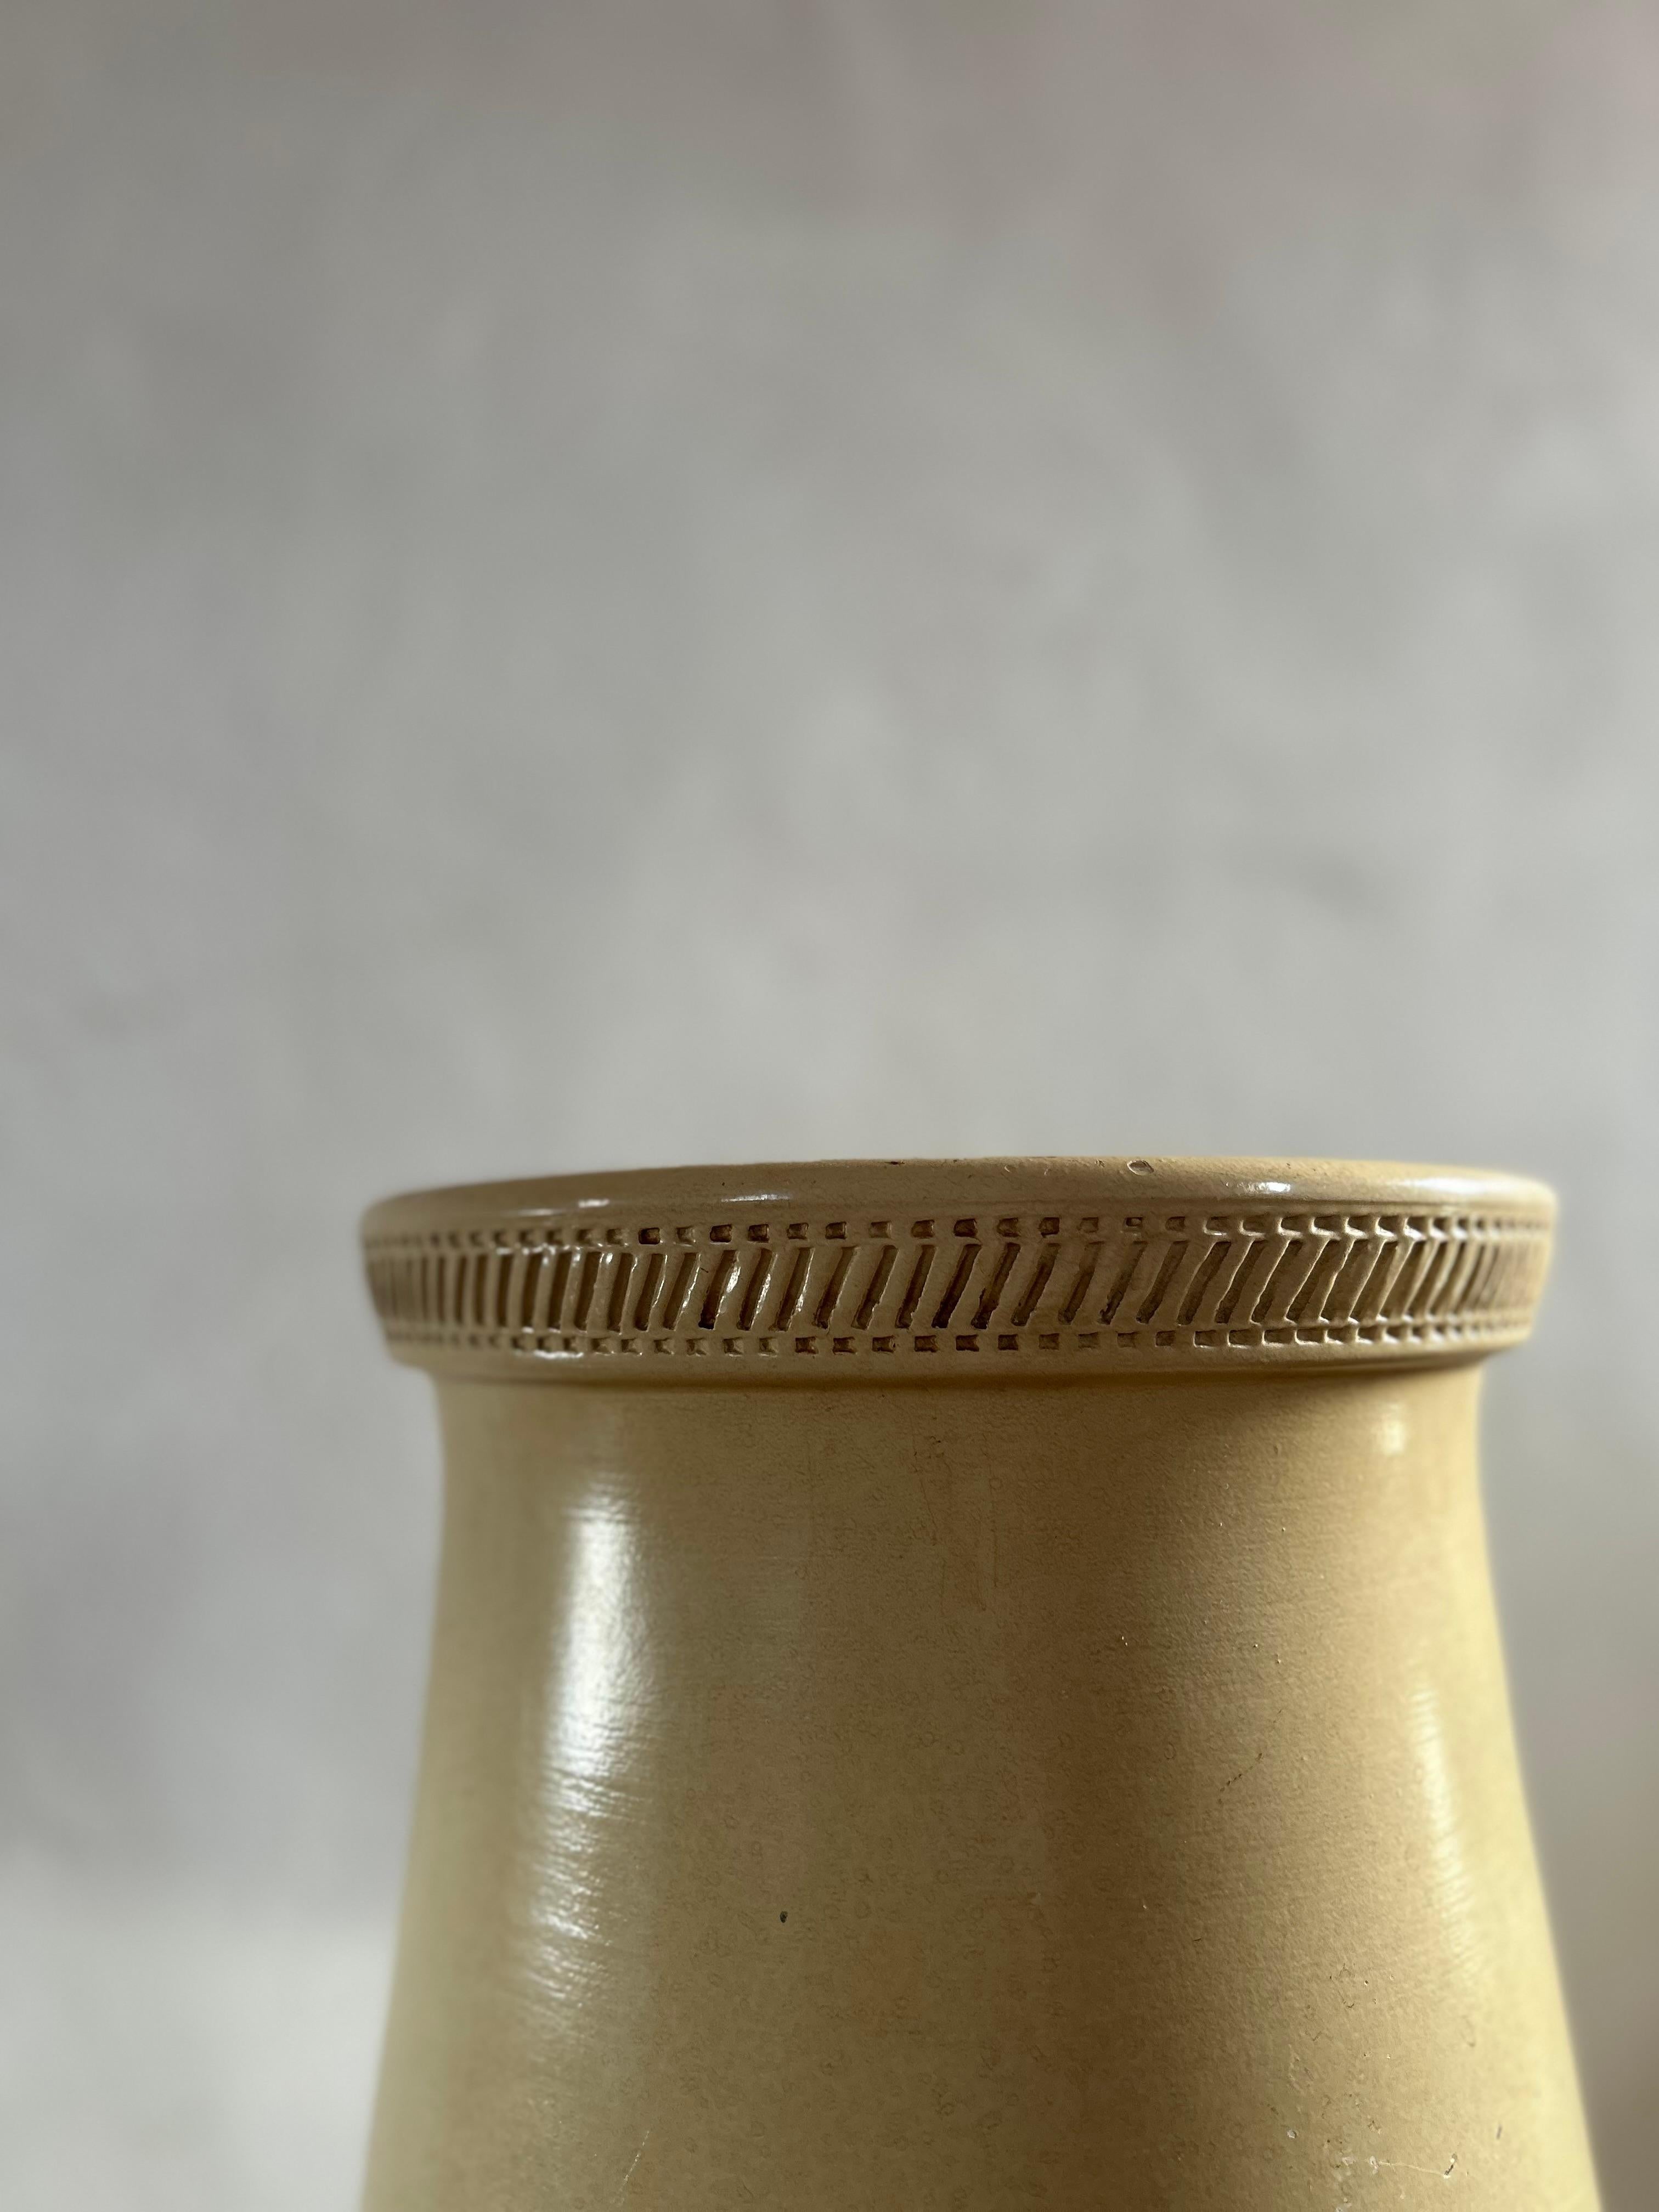 Vase de sol décoratif de Knabstrup, fabriqué au Danemark dans les années 1950. Réputées pour leurs céramiques exceptionnelles et leurs designs intemporels, les pièces de Knabstrup sont très convoitées par les collectionneurs et les amateurs de